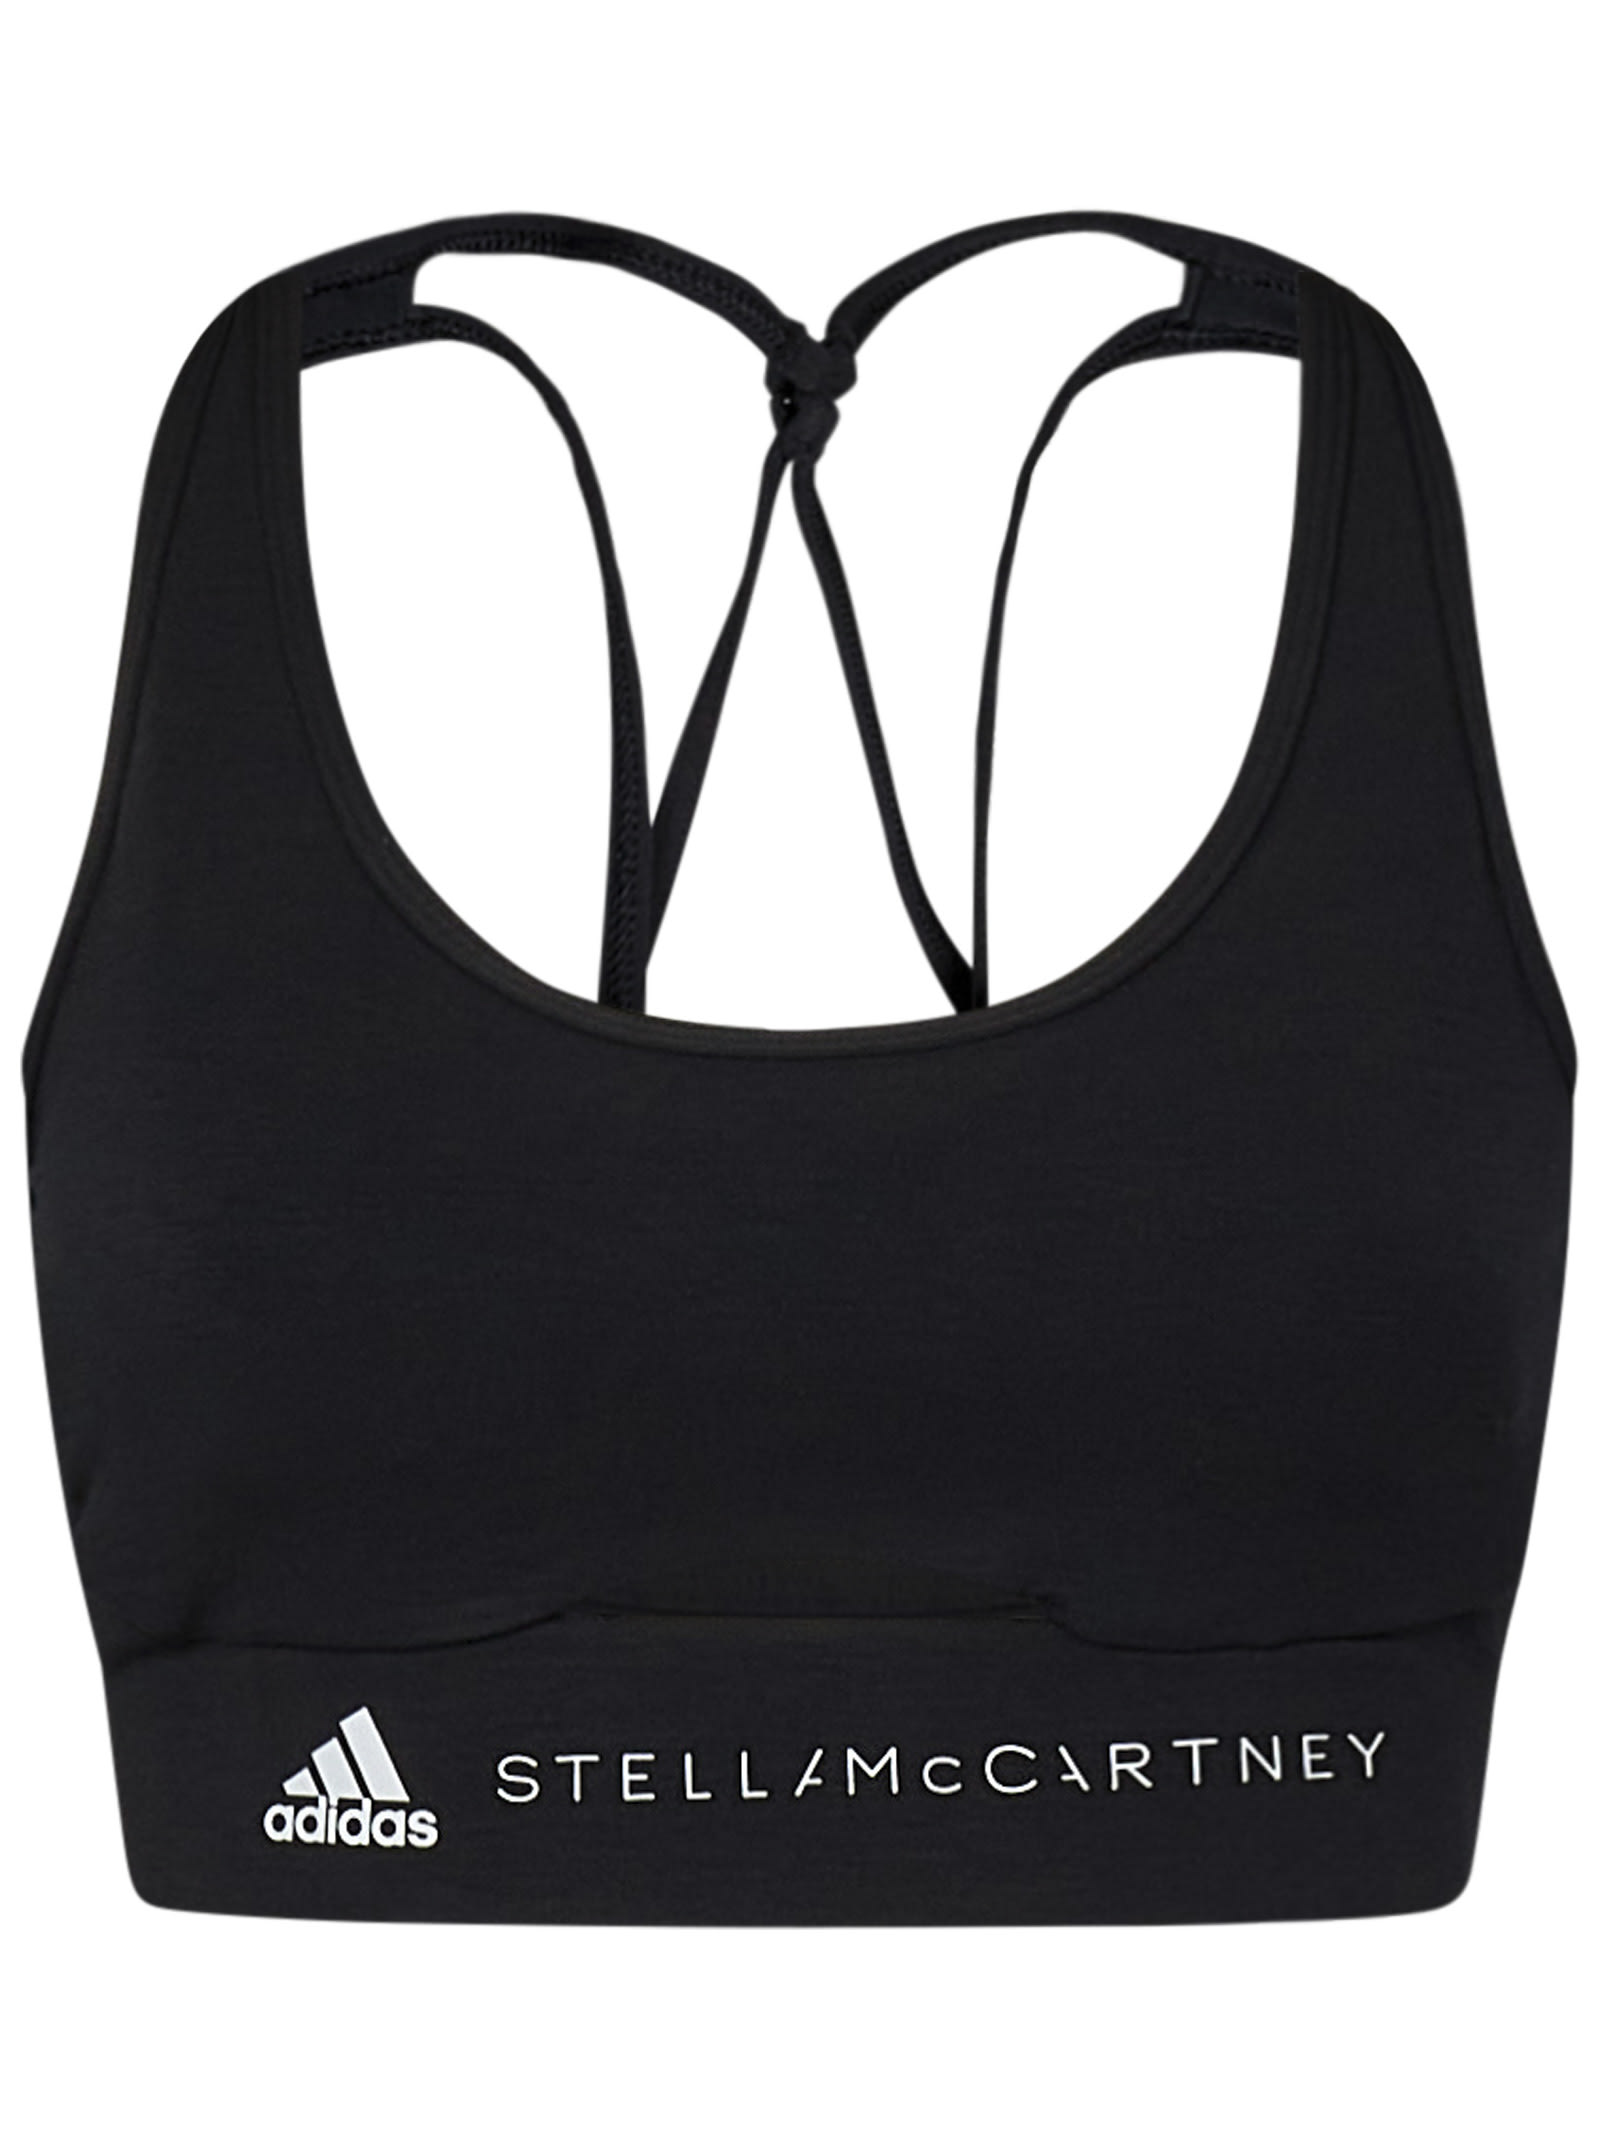 Adidas By Stella Mccartney Top